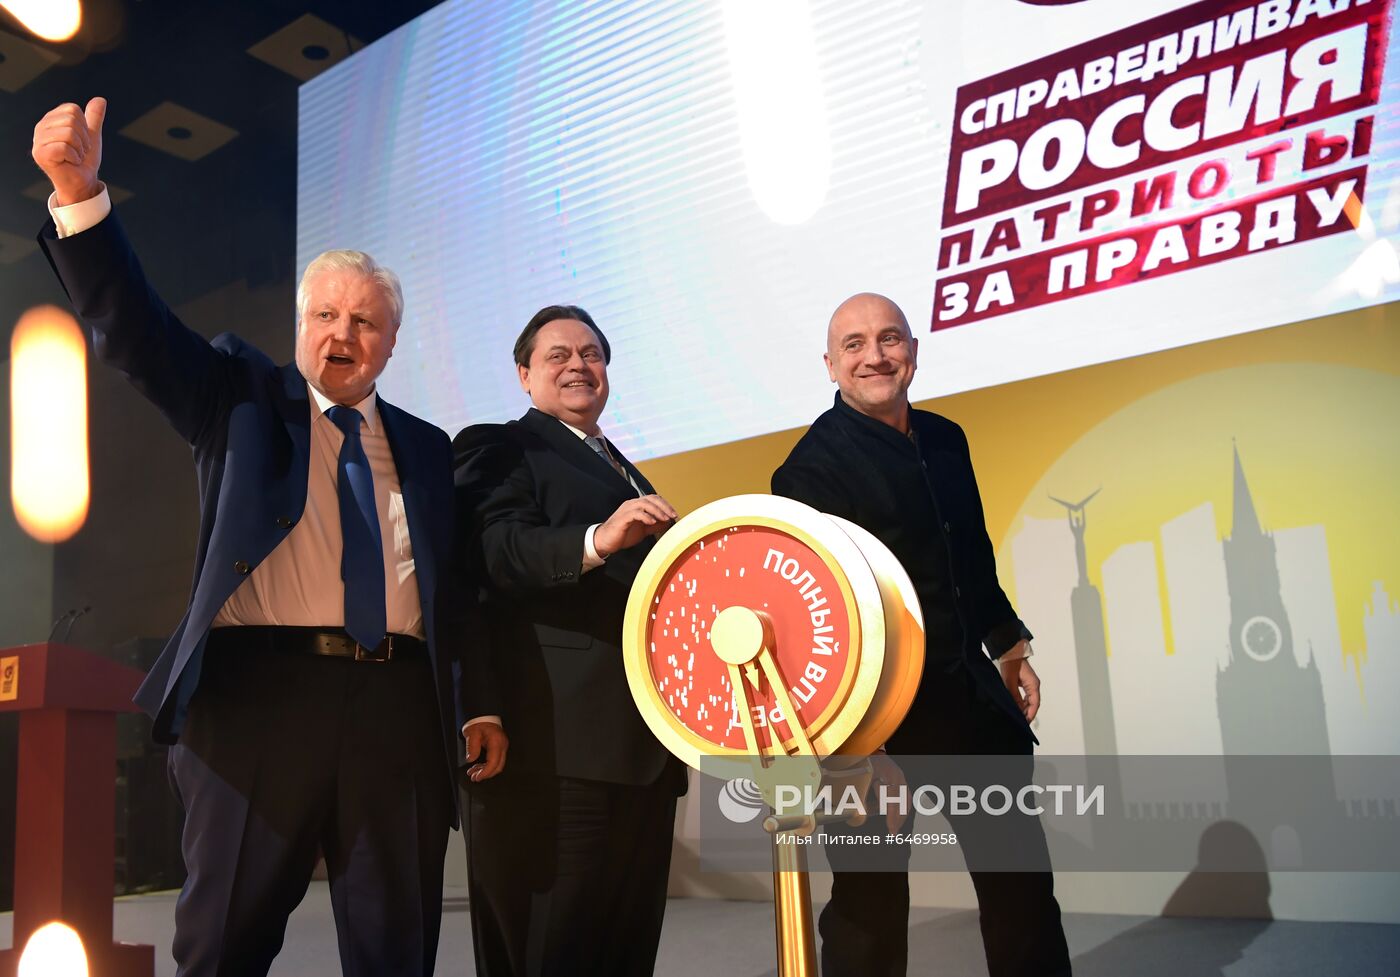 Съезды политических партий России